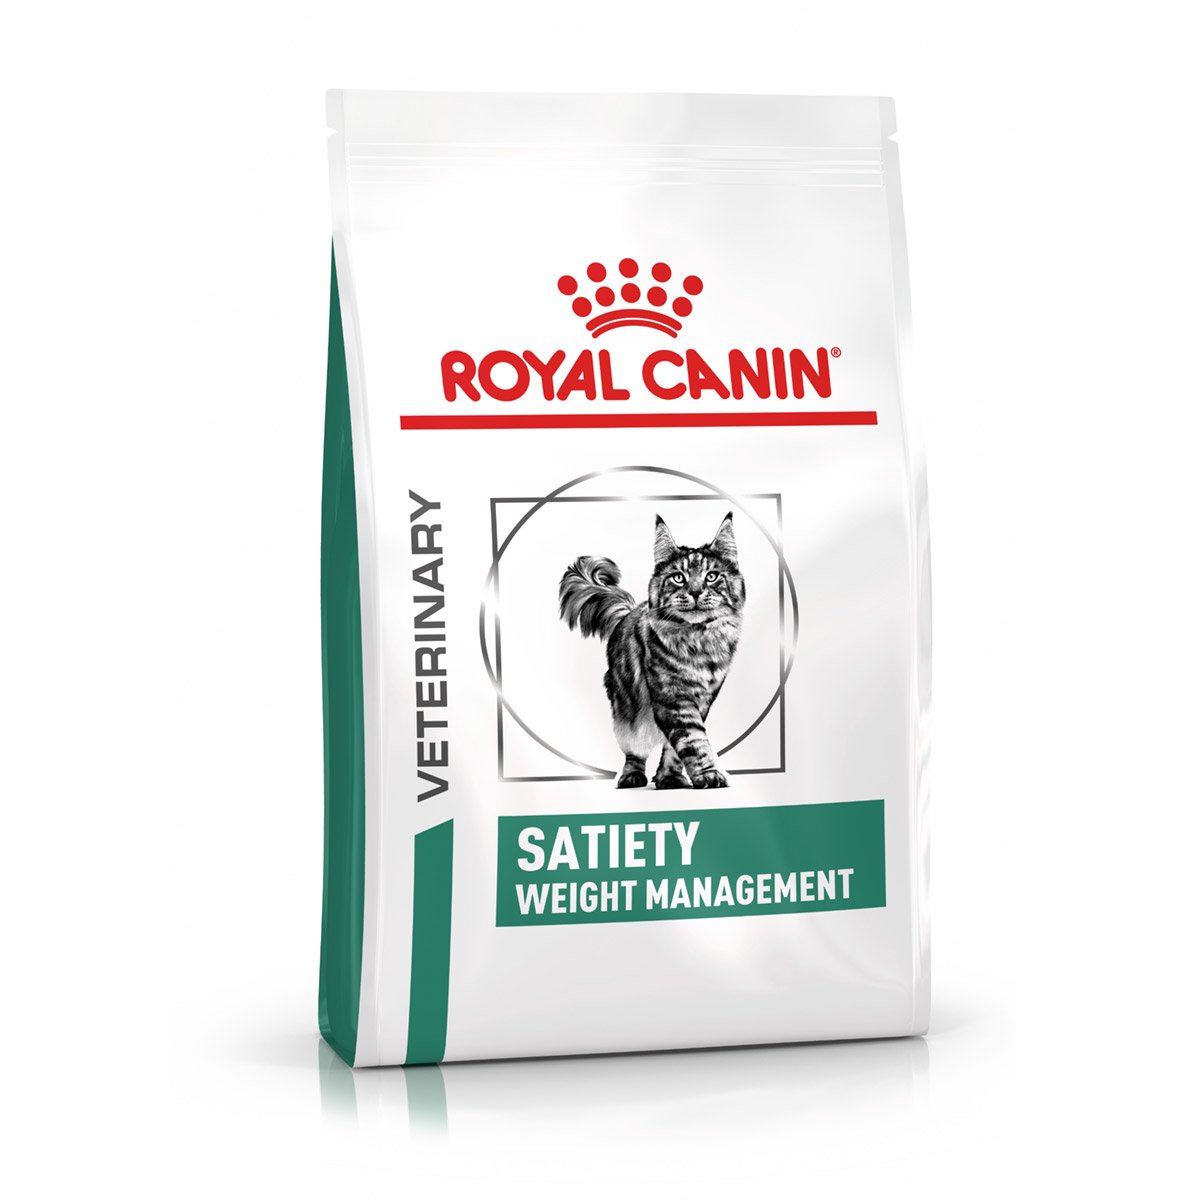 ROYAL CANIN® Veterinary SATIETY WEIGHT MANAGEMENT Trockenfutter für Katzen 6kg von Royal Canin